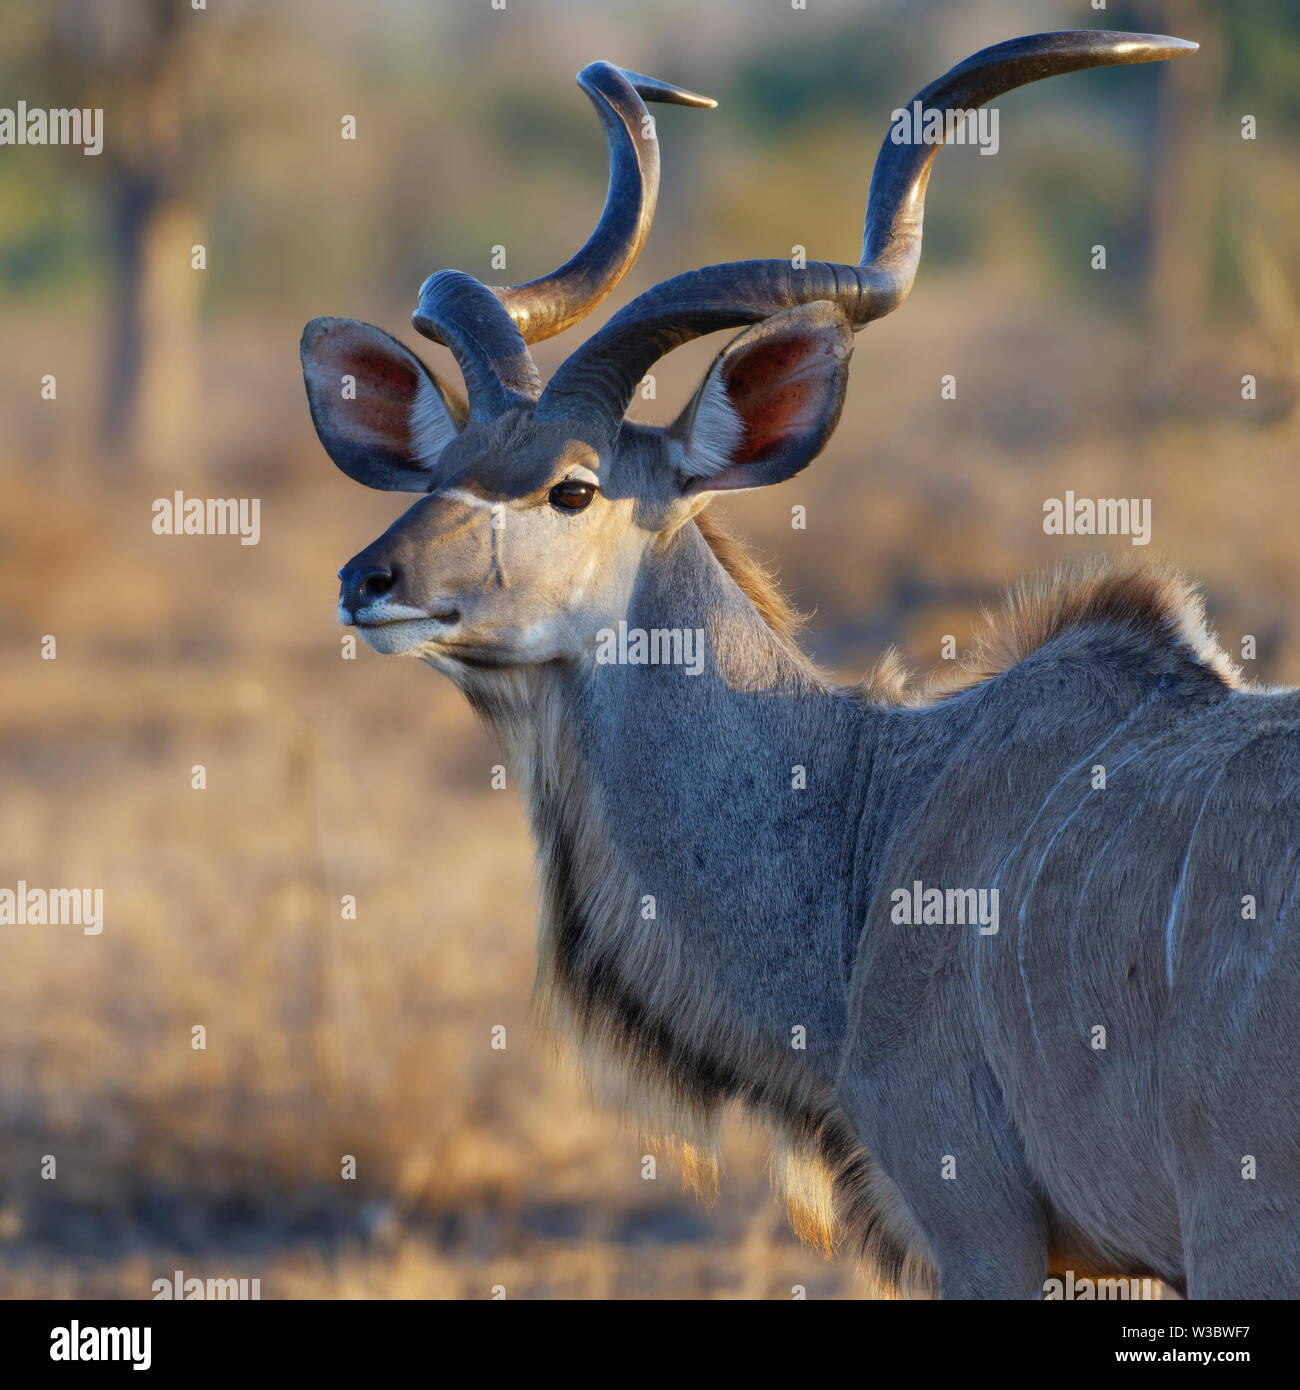 Kudu mayor (Tragelaphus strepsiceros), animal macho adulto, retrato, luz del atardecer, el Parque Nacional Kruger, Sudáfrica, África Foto de stock